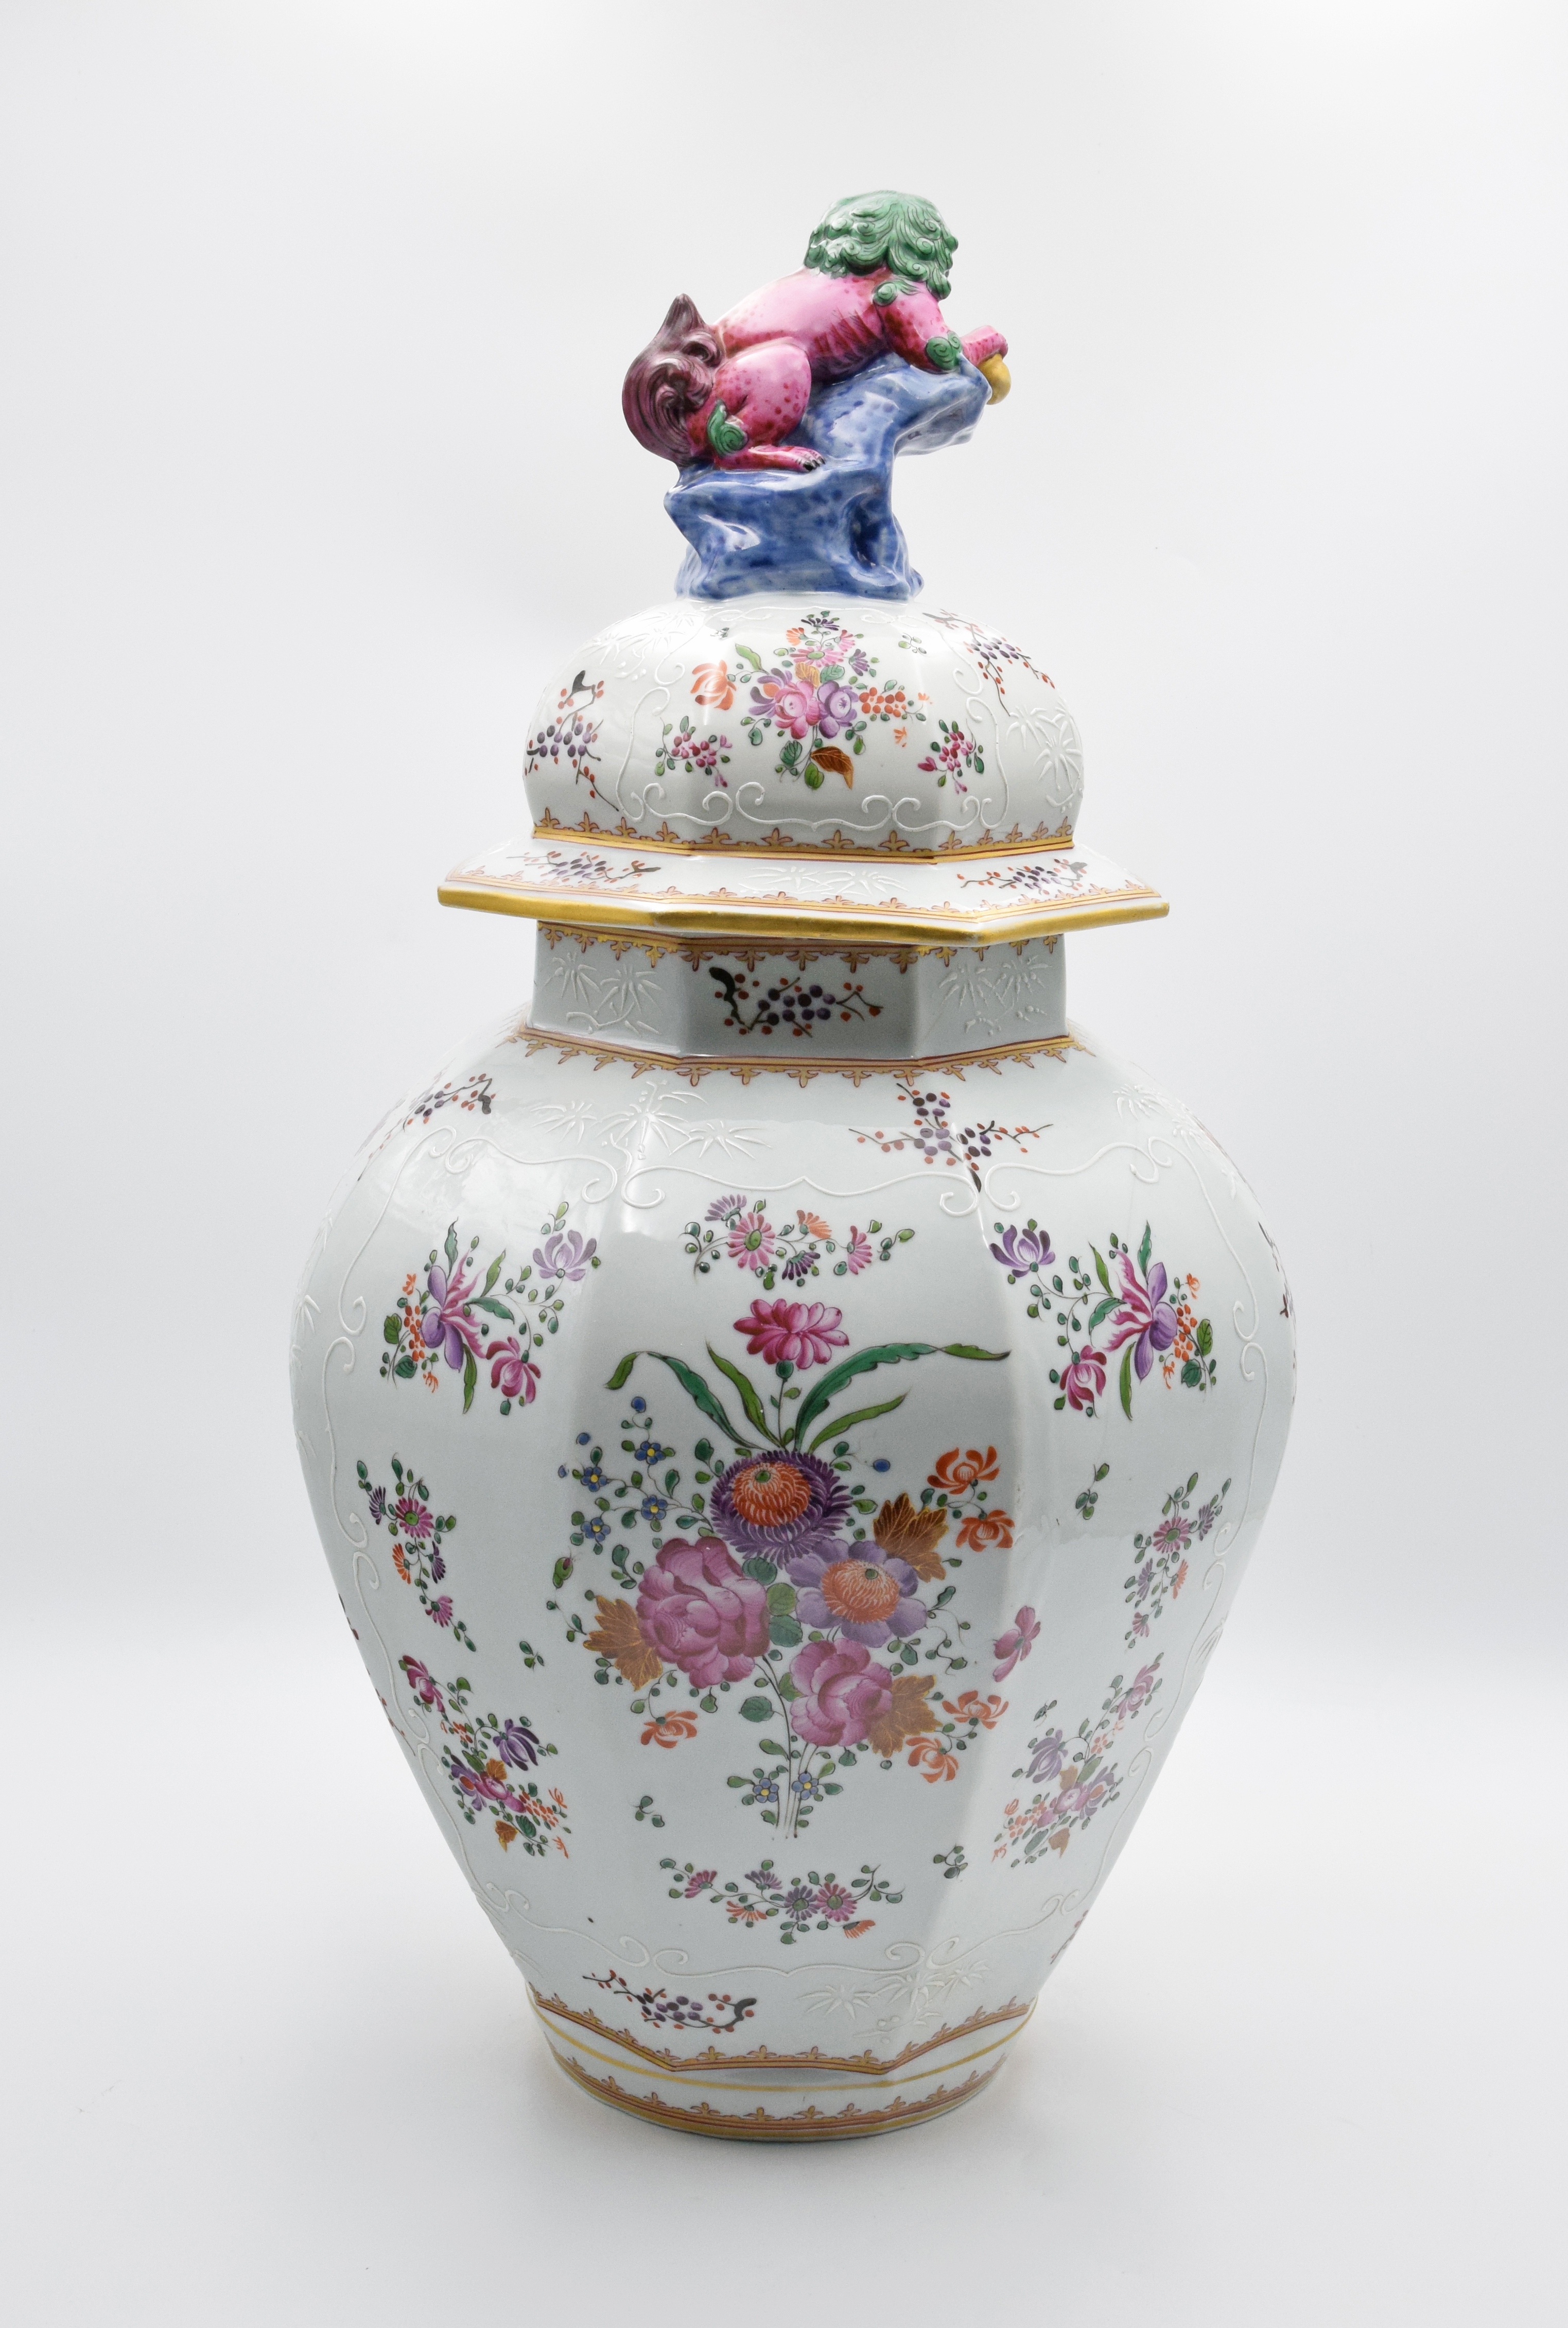 Wazon z pokrywą, z herbem Wielkiej Brytanii, z dekoracją emaliową i kwiatową w typie chińskiej porcelany eksportowej